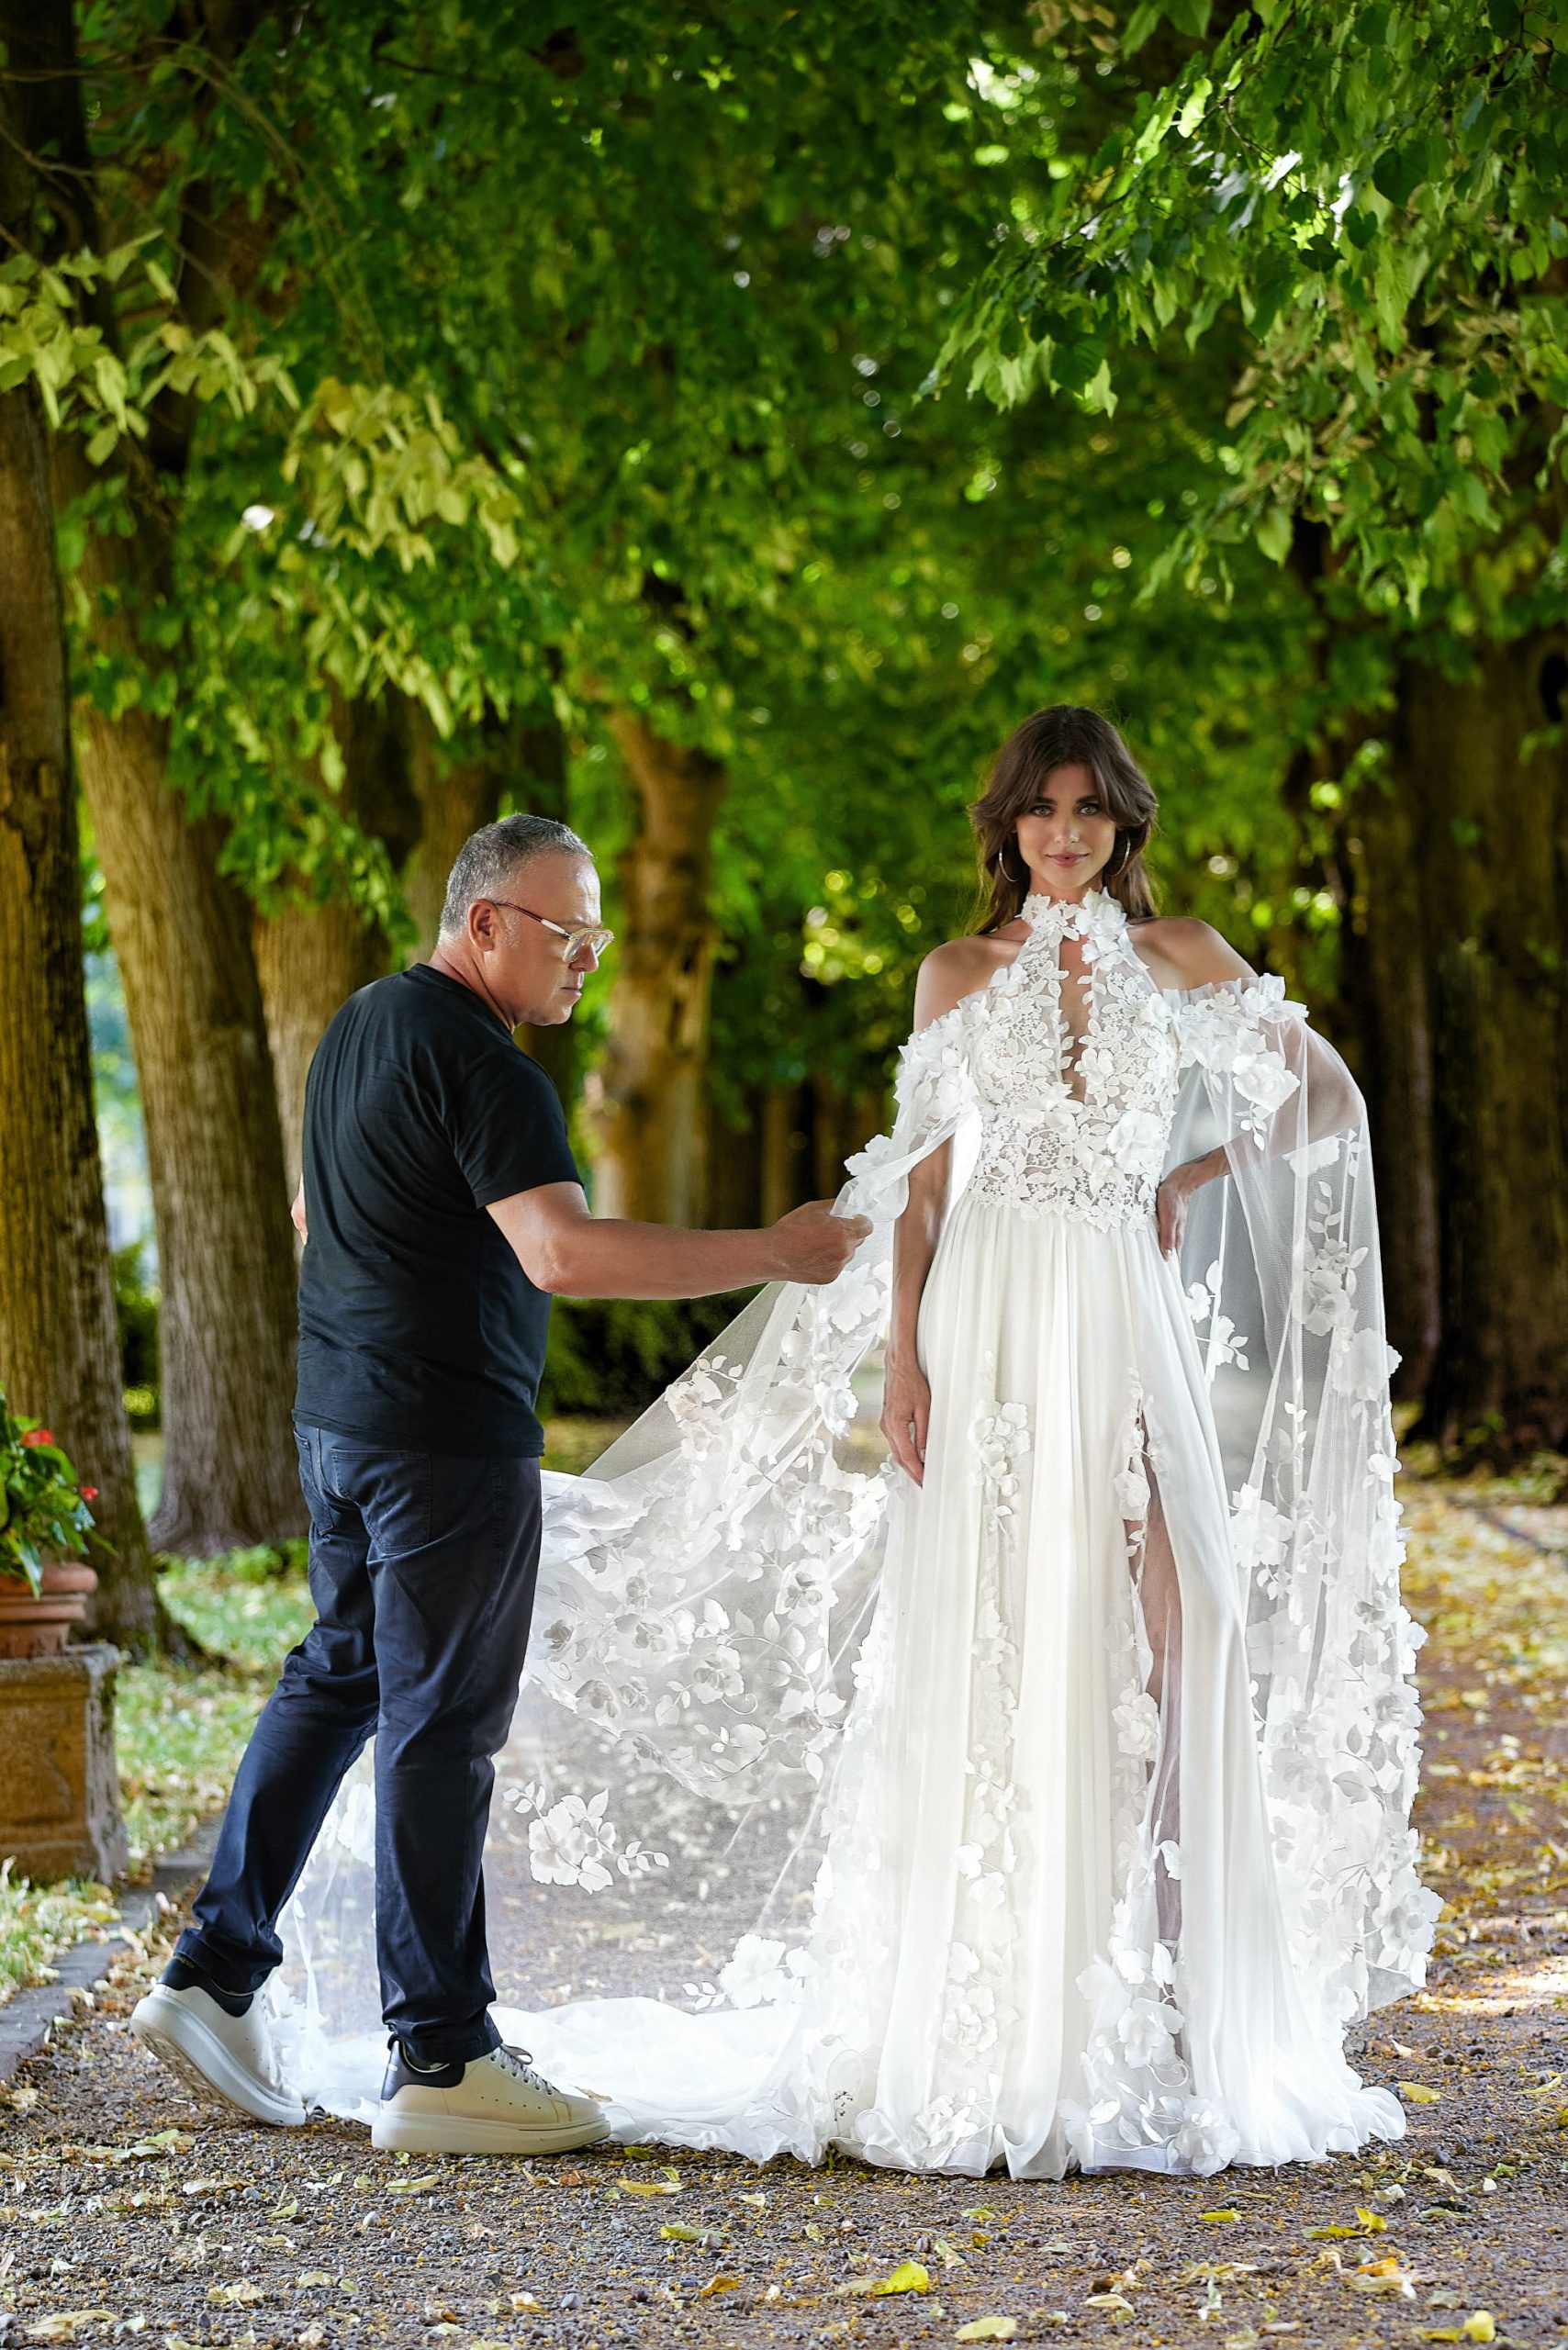 Collezioni Esclusive di Vestiti da Sposa: Le Scelte dei Designer Top per il Tuo Giorno Speciale